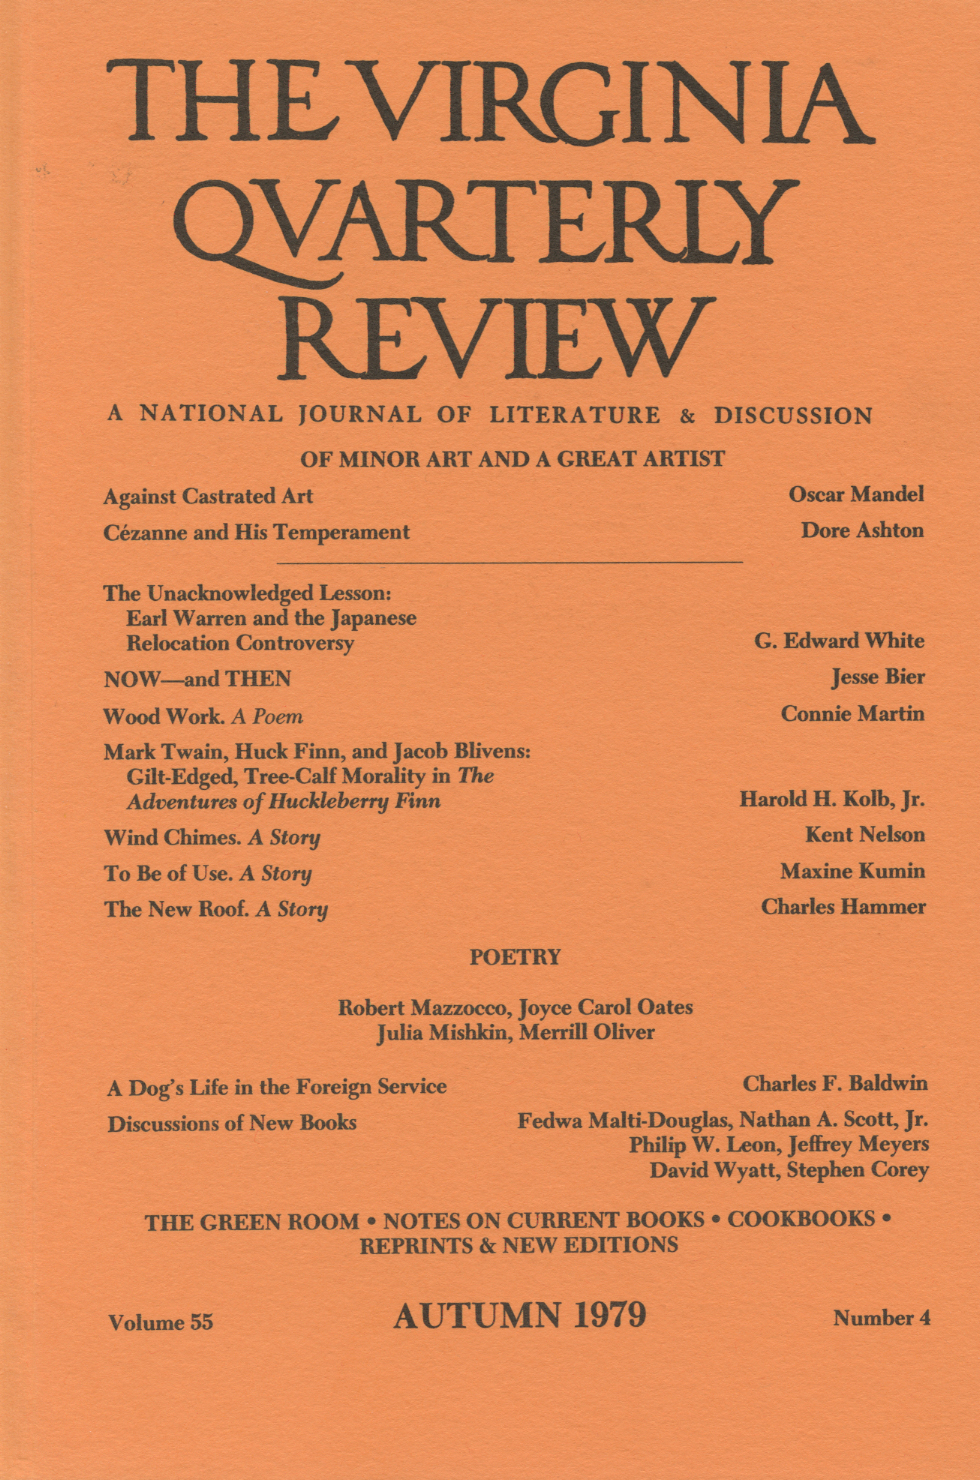 Virginia Quarterly Review, Autumn 1979 cover